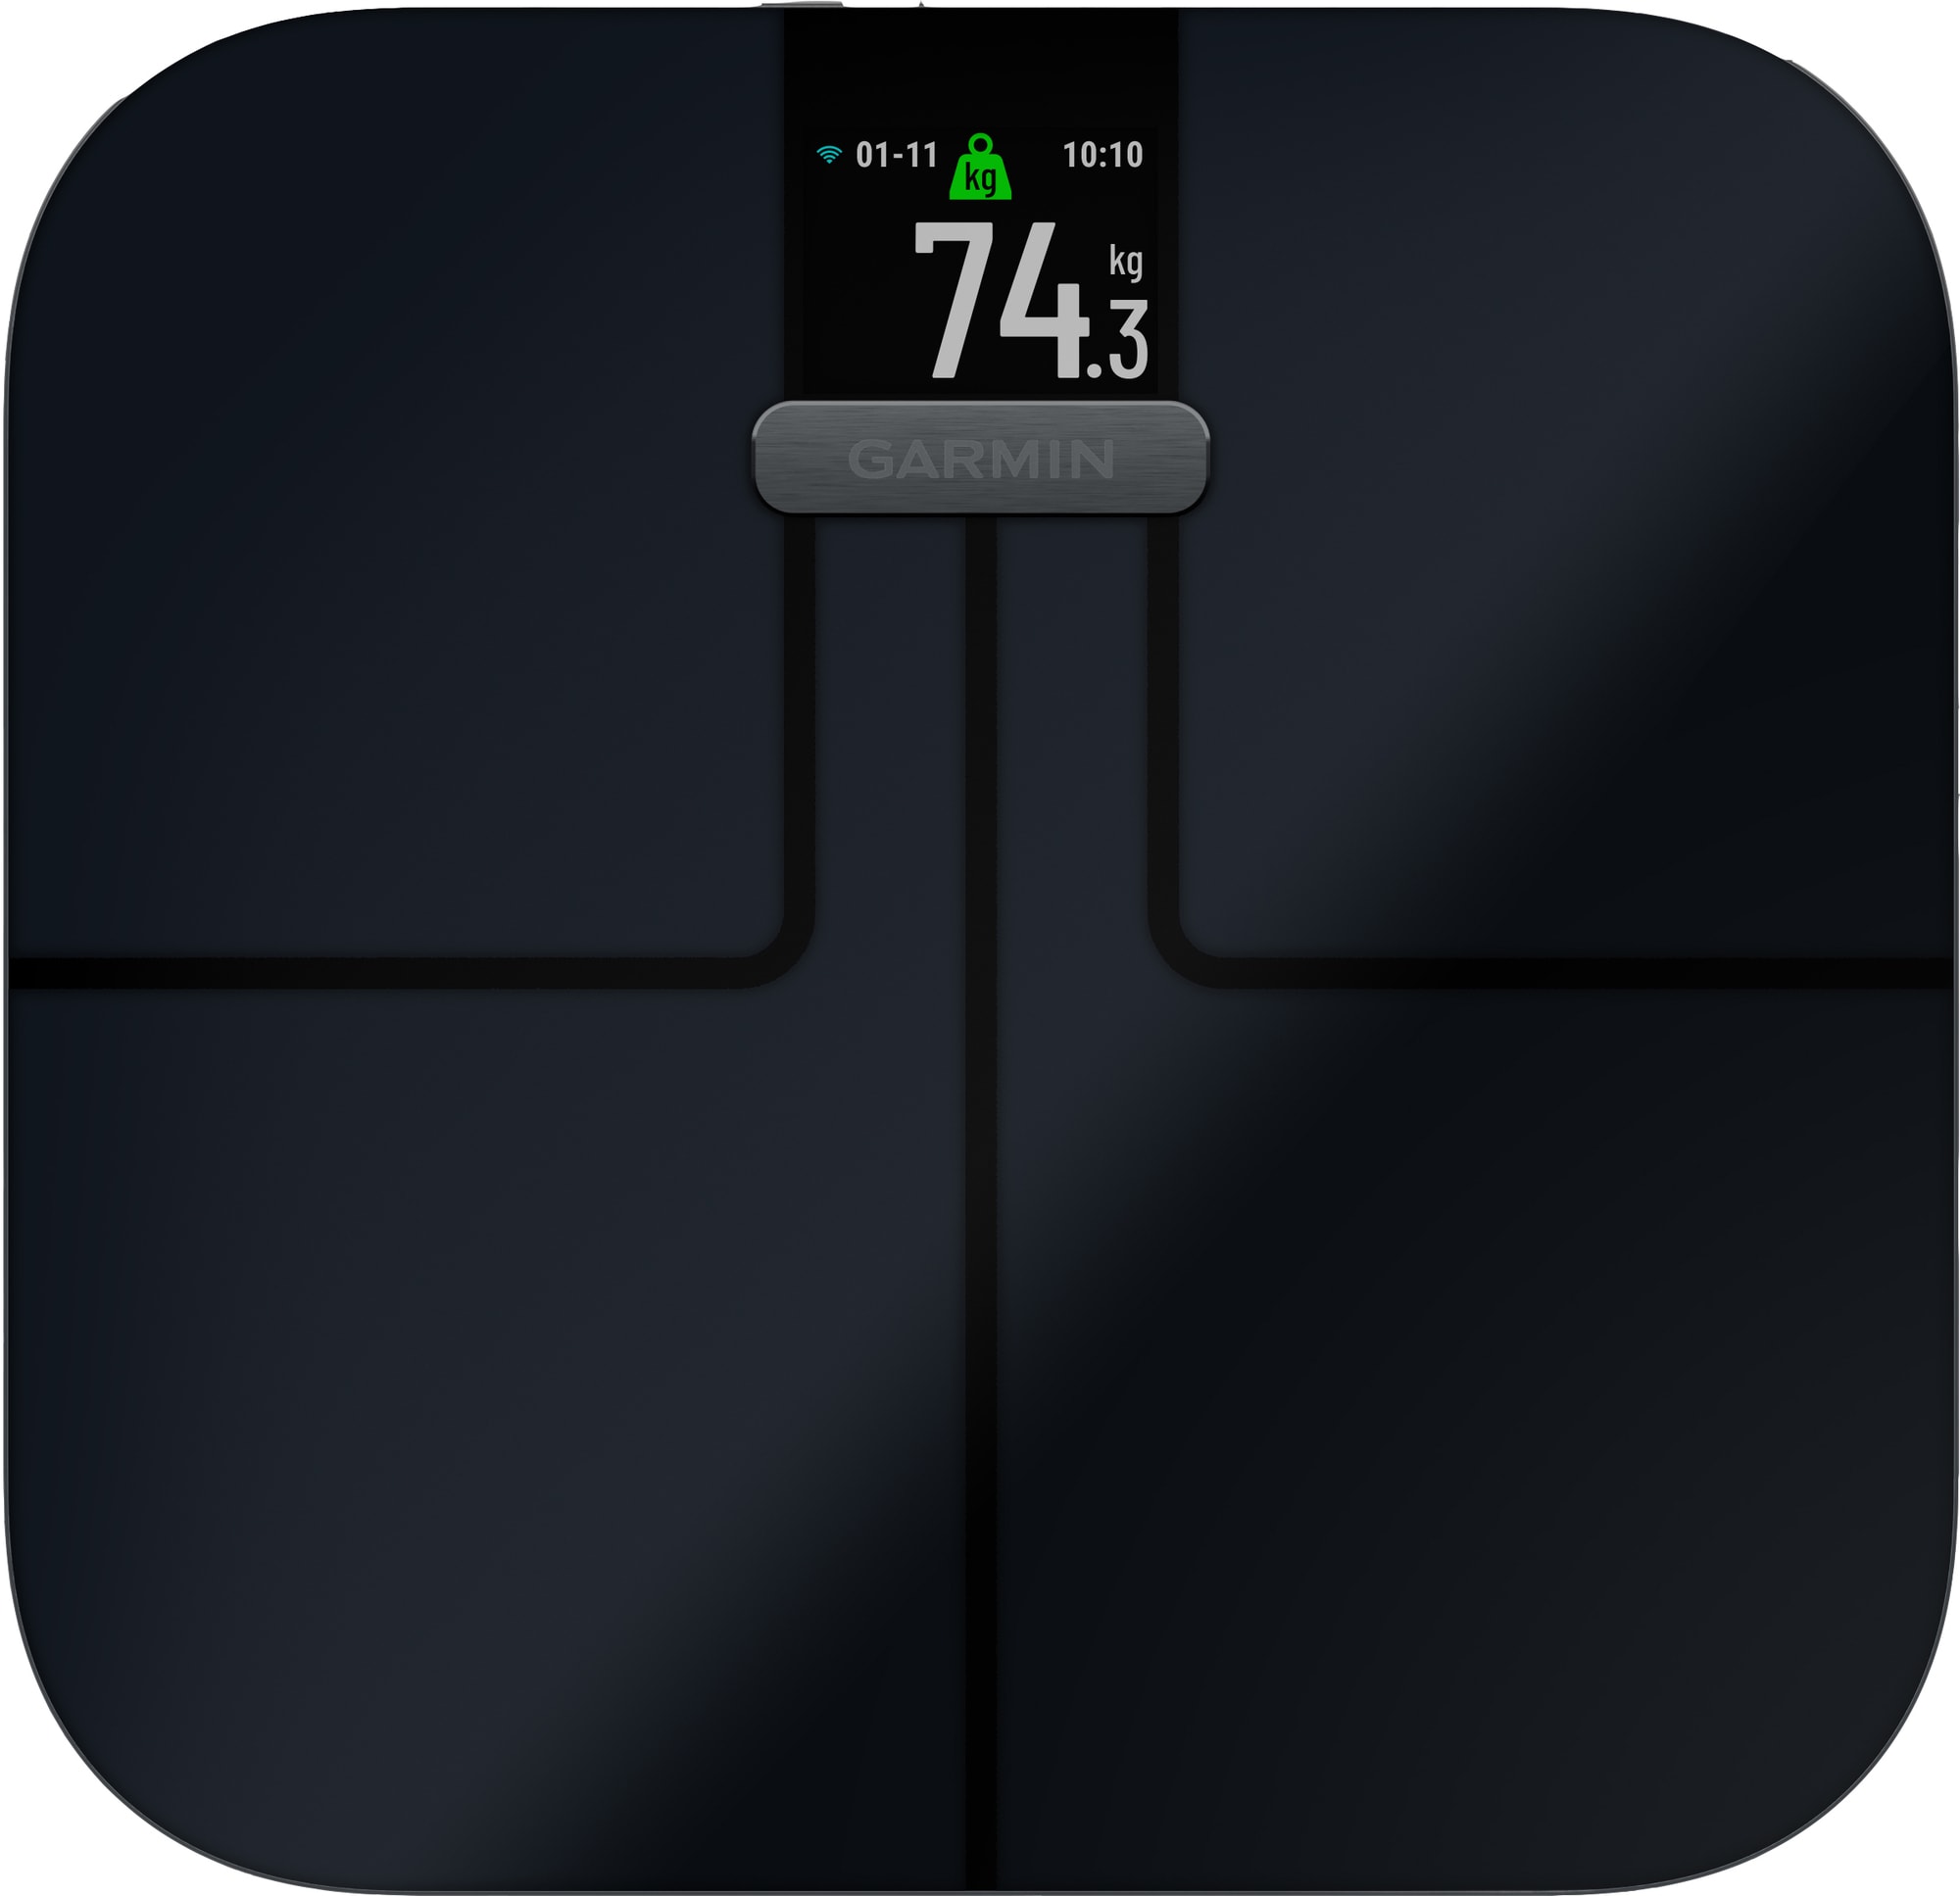 Se Garmin Index S2 Smart Scale - Vægt der bl.a måler kropsfedt, vand og BMI - Sort hos Elgiganten